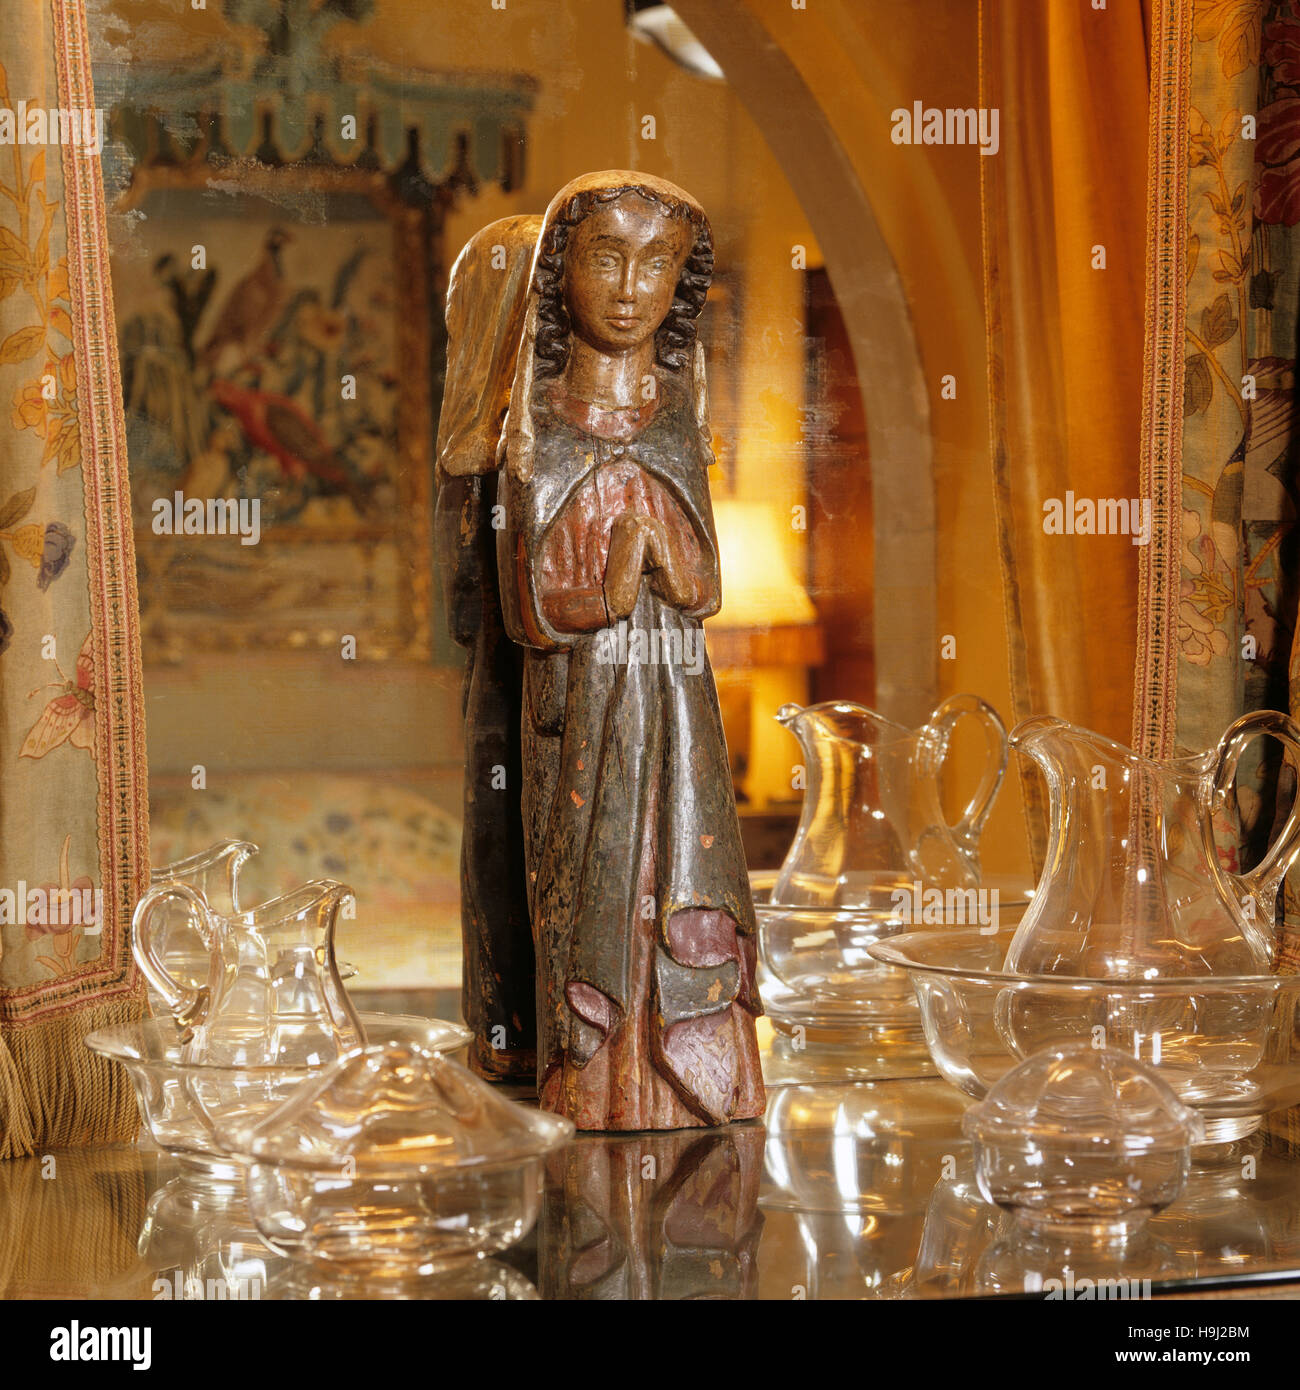 Nahaufnahme der 14. Jahrhundert Figur der Jungfrau Maria in der vorherigen Raum wurde wahrscheinlich in Burgund geschnitzt. Stockfoto